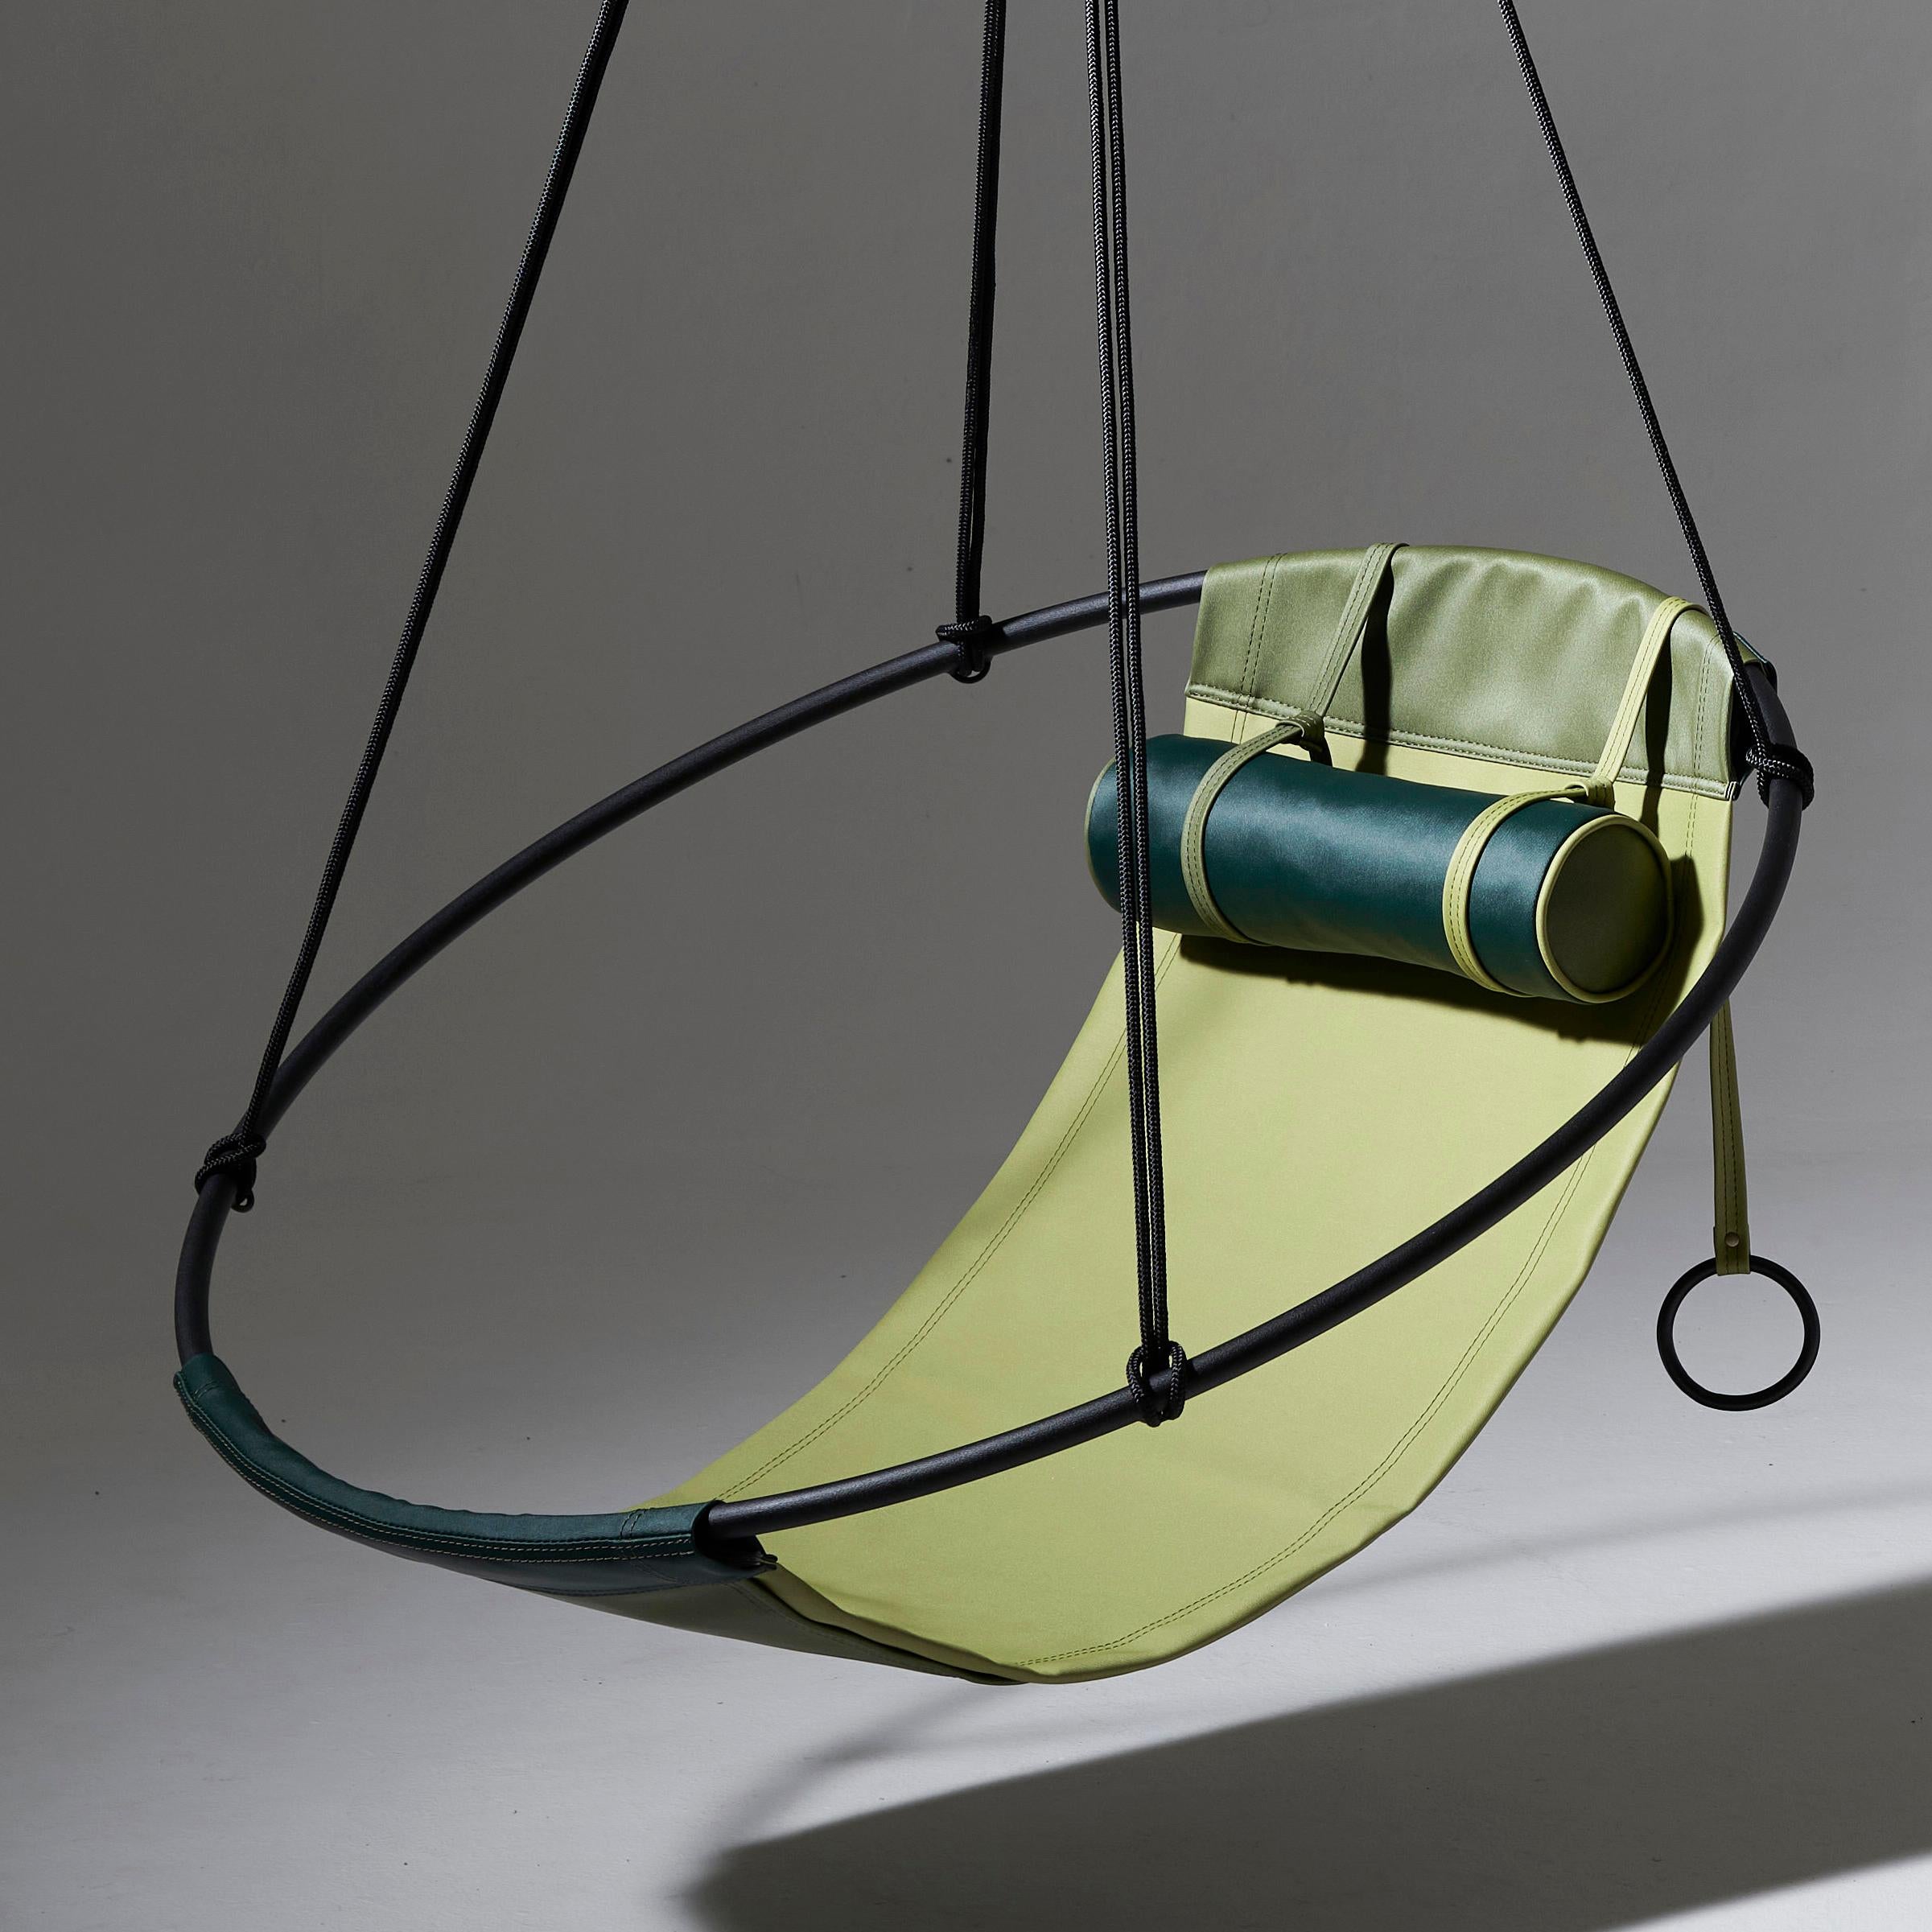 Notre fauteuil suspendu d'extérieur est fabriqué avec le matériau Spradling Silvertex, un matériau végétal très durable et respectueux de l'environnement.
Les écharpes peuvent être commandées séparément, mais elles peuvent aussi être combinées en